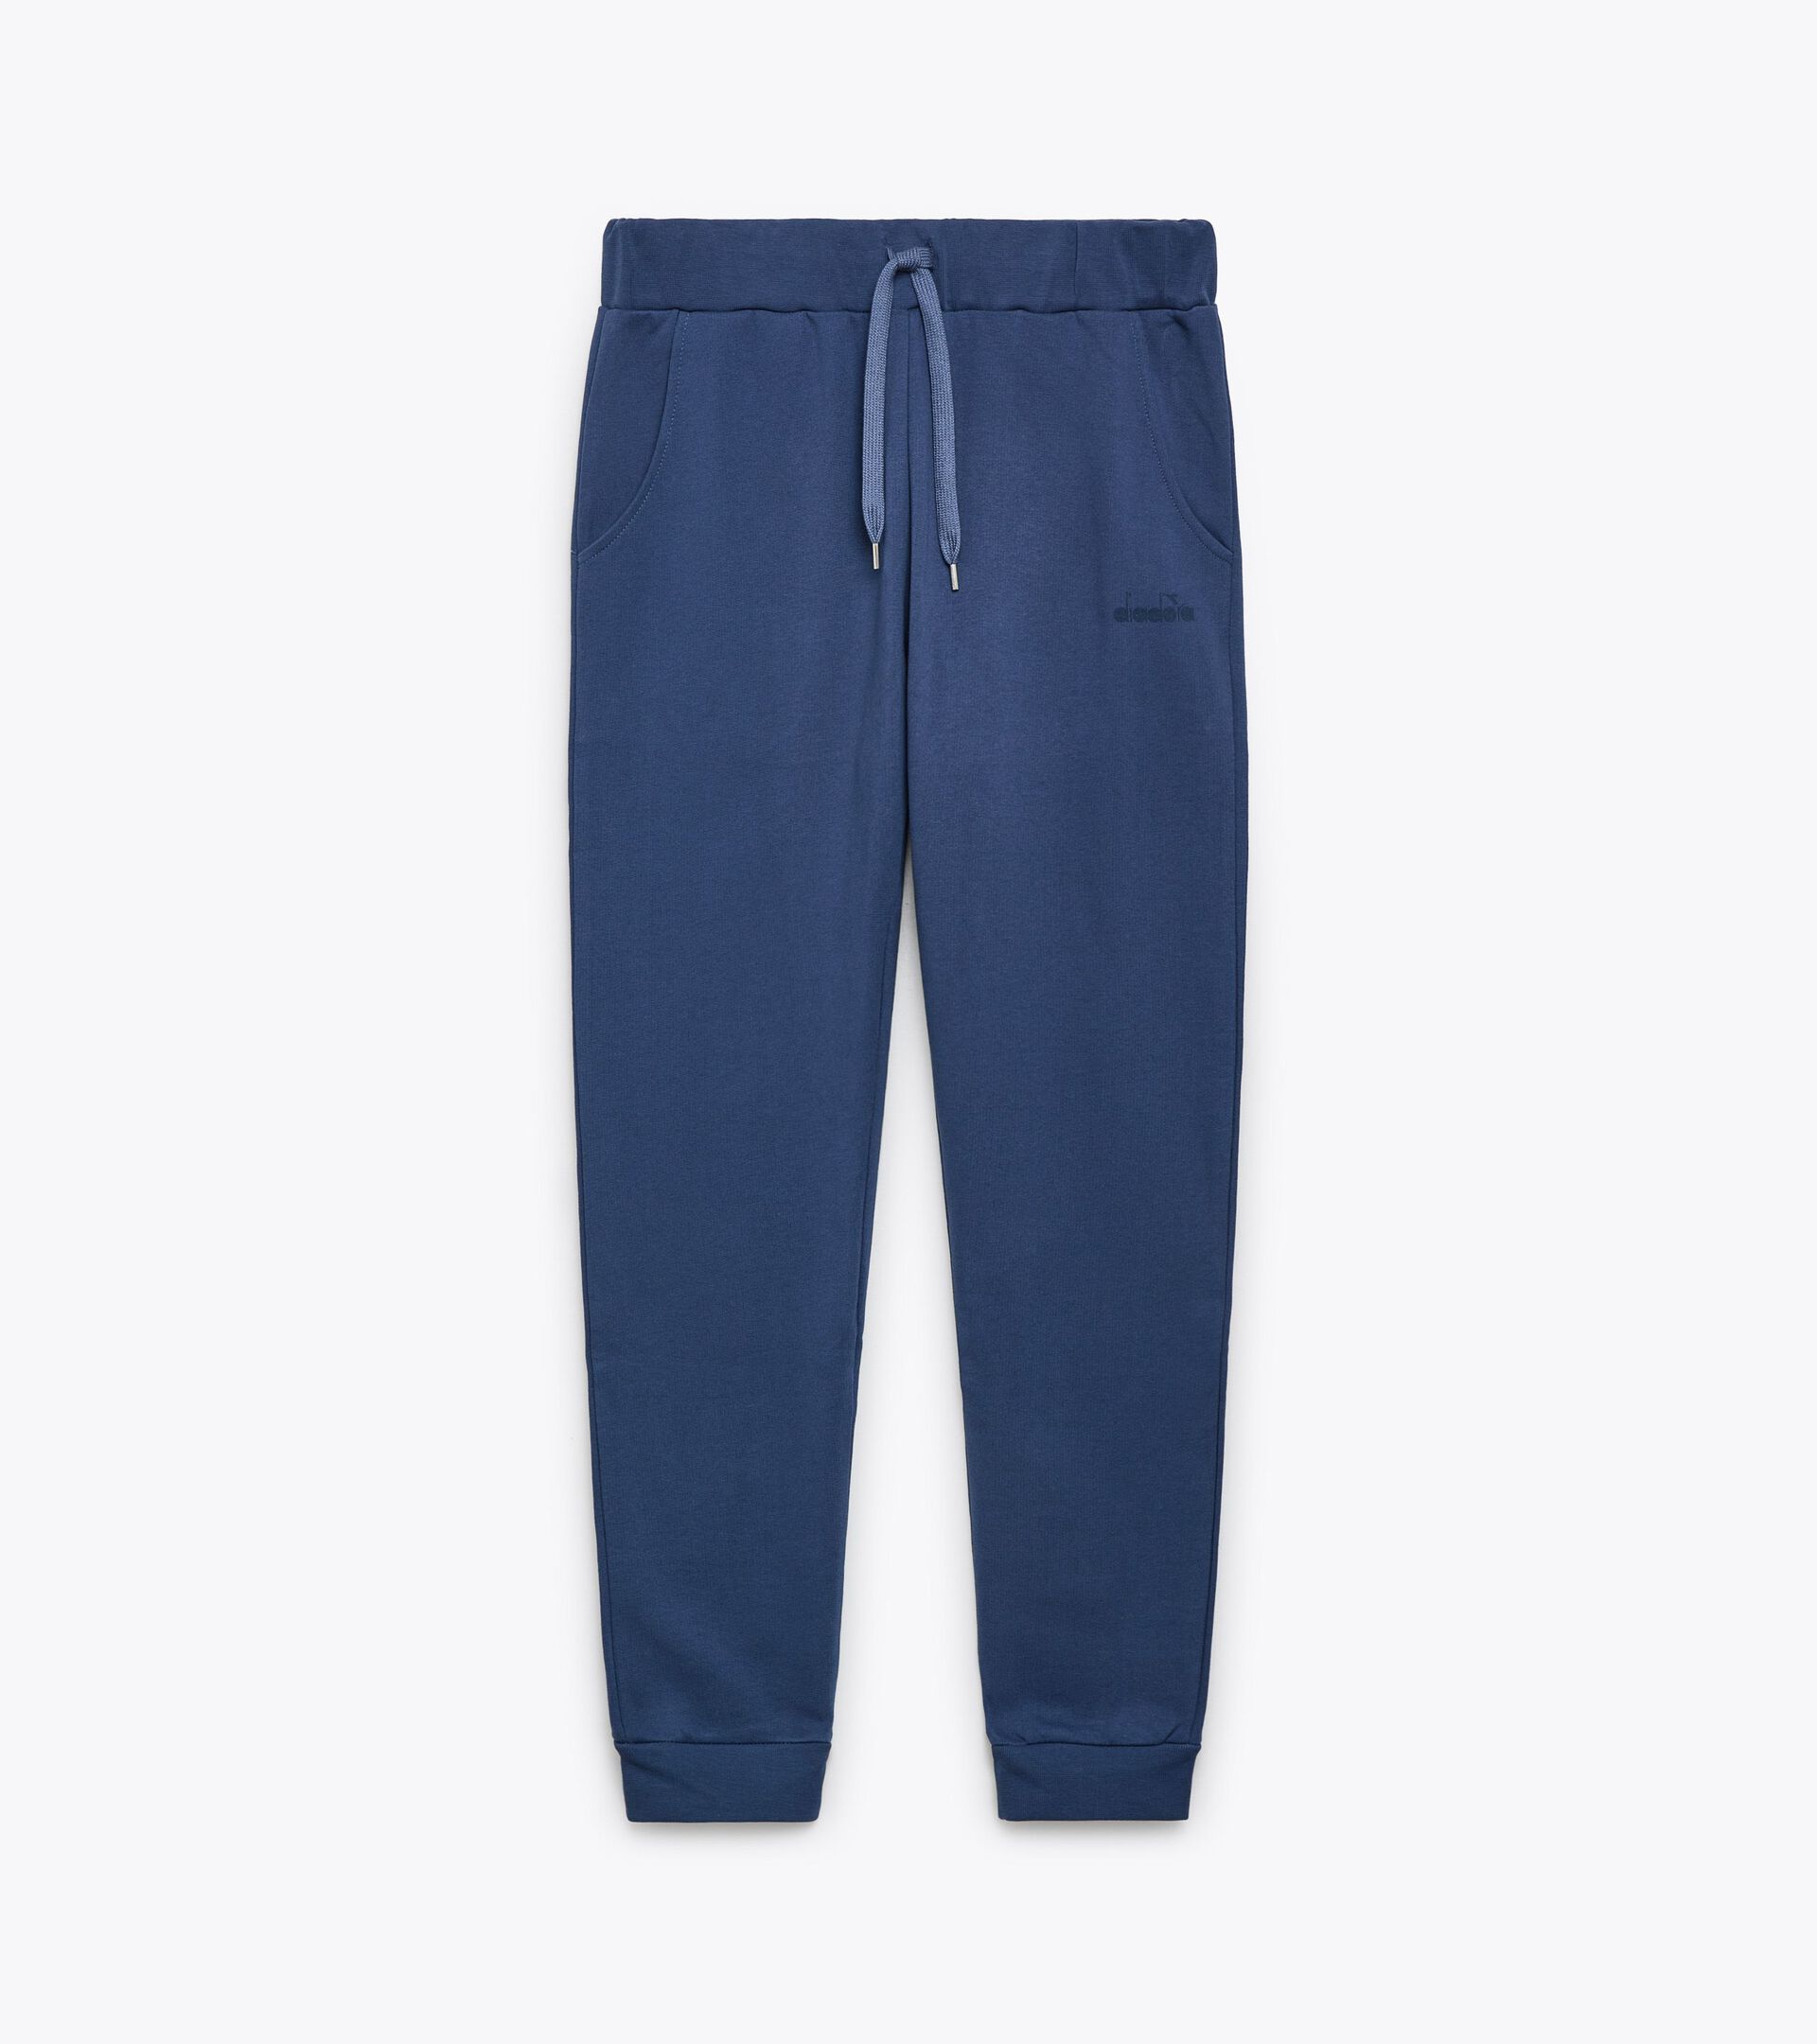 Pantalón deportivo - Made in Italy - Gender neutral PANTS LOGO OCEANA - Diadora